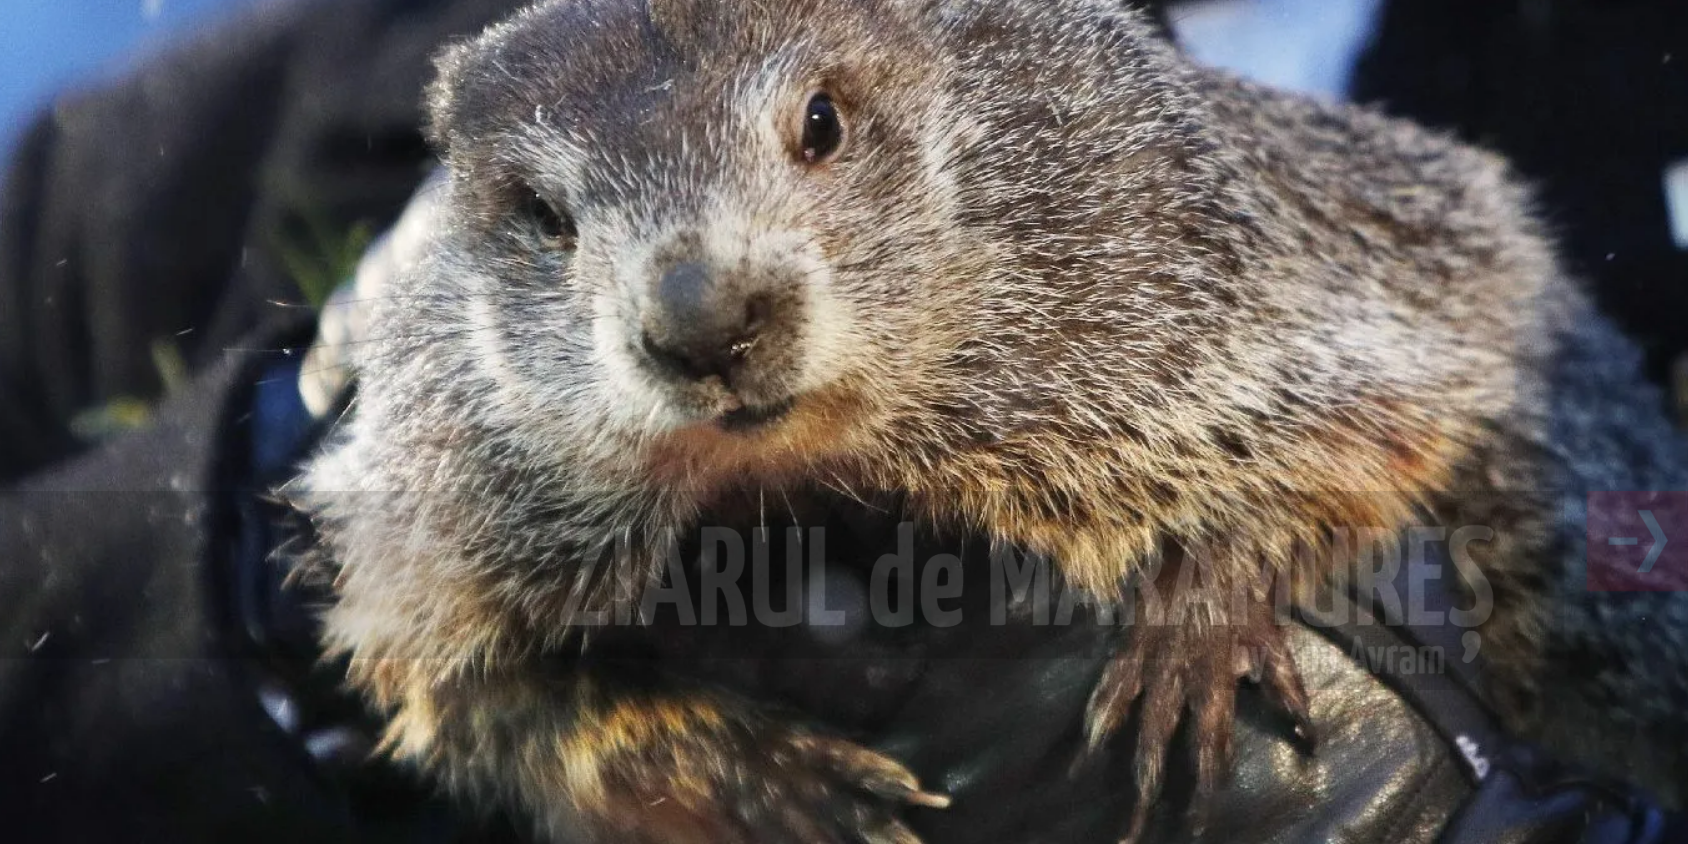 Phil, cea mai vestită marmotă-meteorolog, prognozează încă șase săptămâni de iarnă în Statele Unite